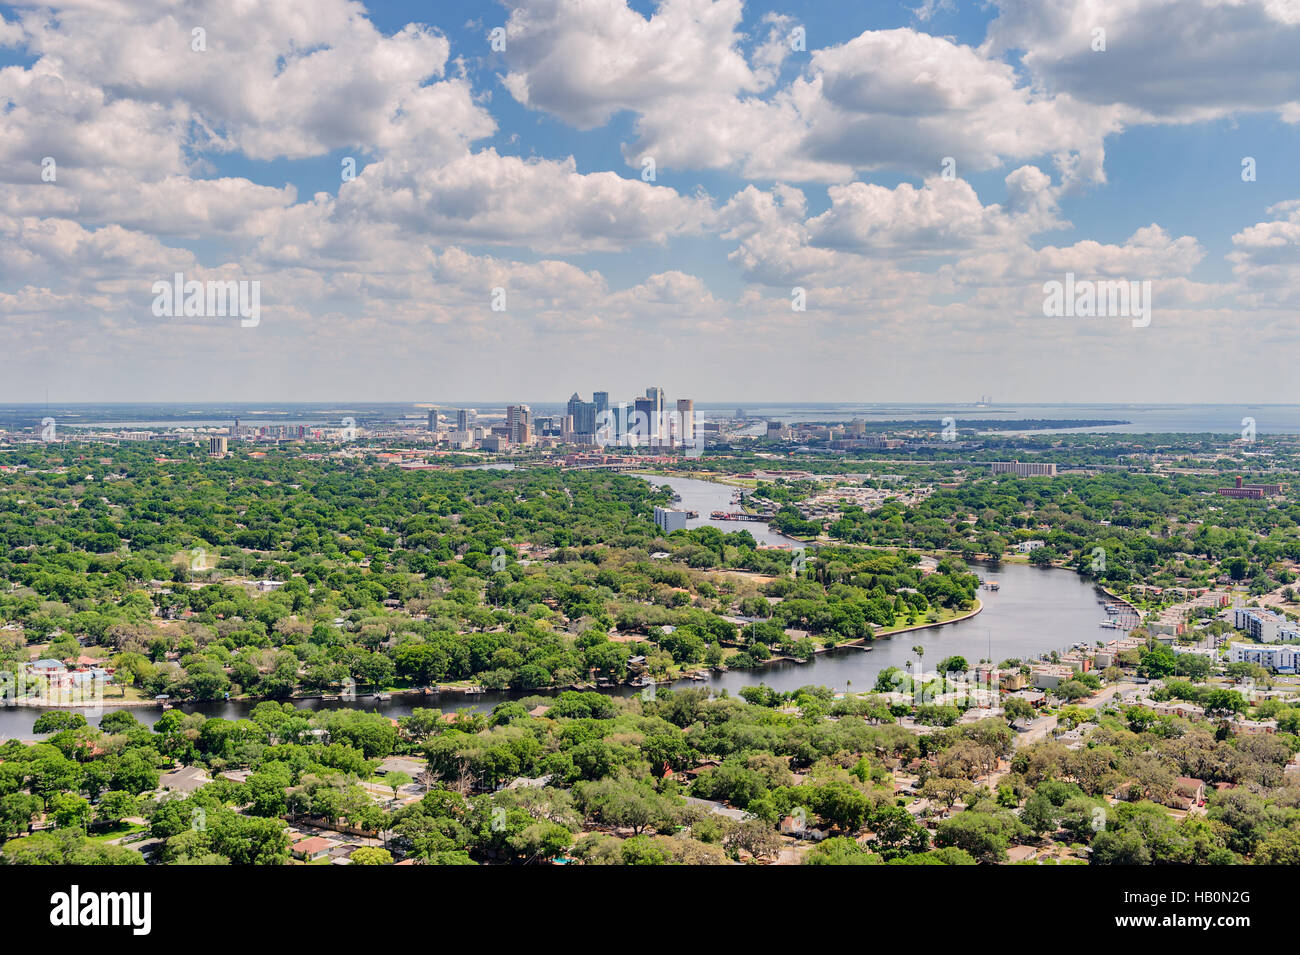 Vista aerea di Tampa, Florida, Stati Uniti d'America, con l'Hillsborough fiume che scorre alla baia che mostra i molti sobborghi e quartieri della città. Foto Stock